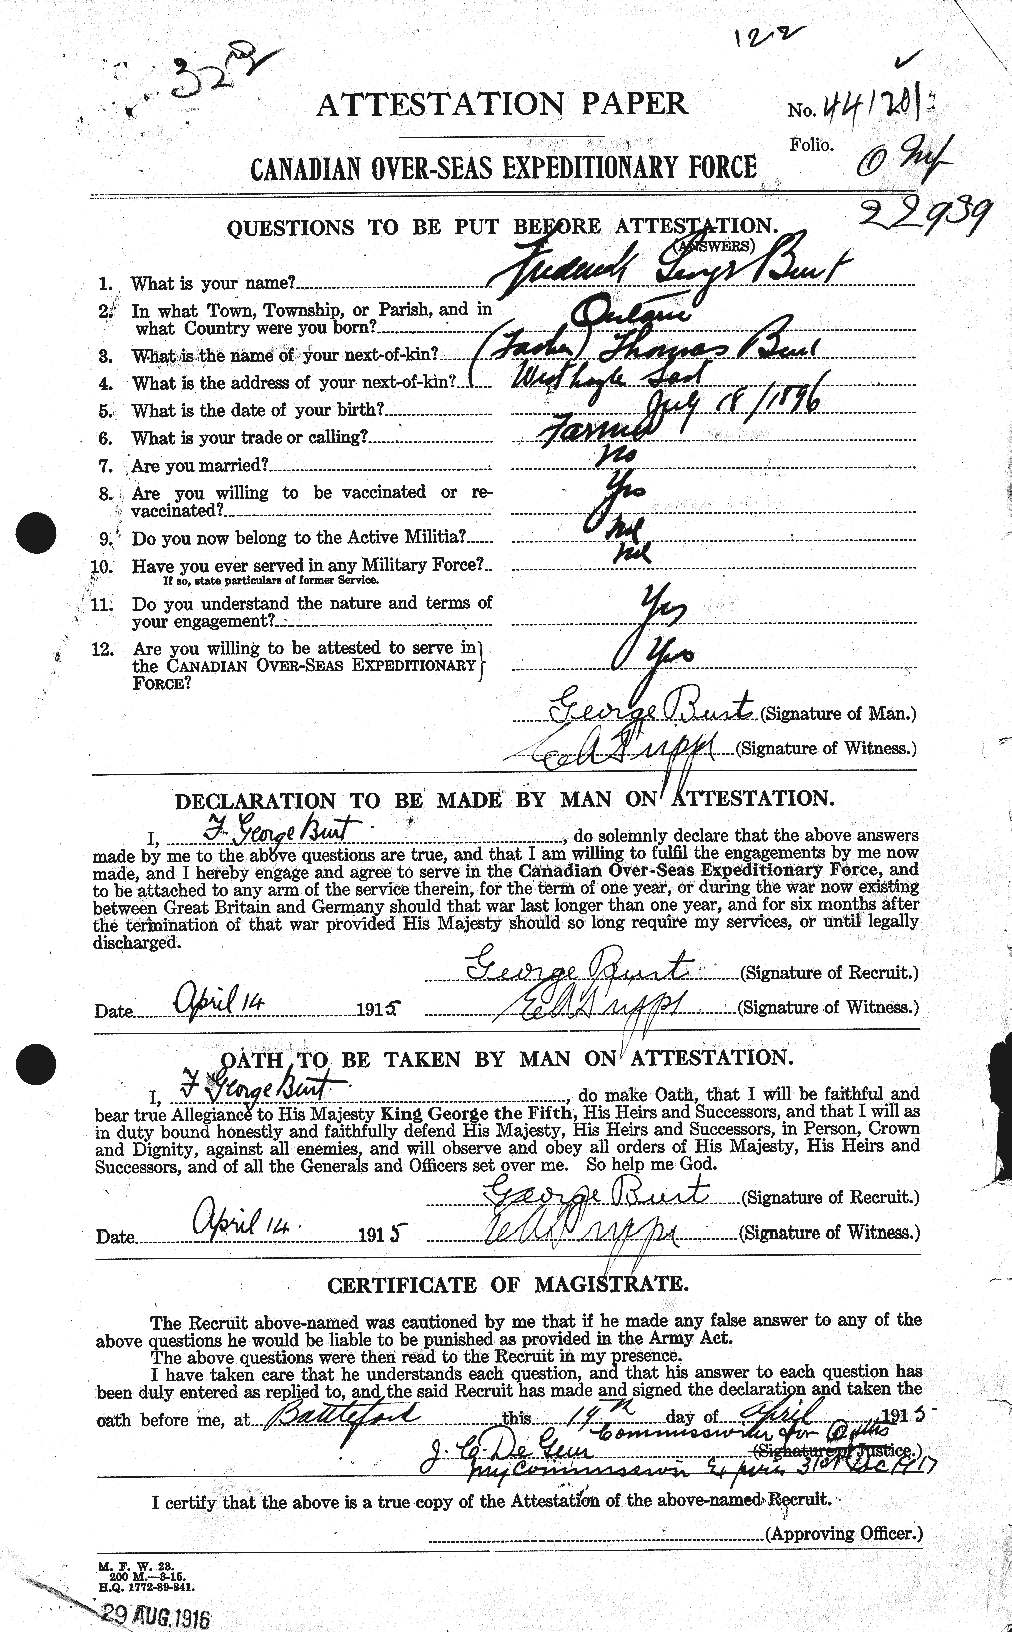 Dossiers du Personnel de la Première Guerre mondiale - CEC 275007a